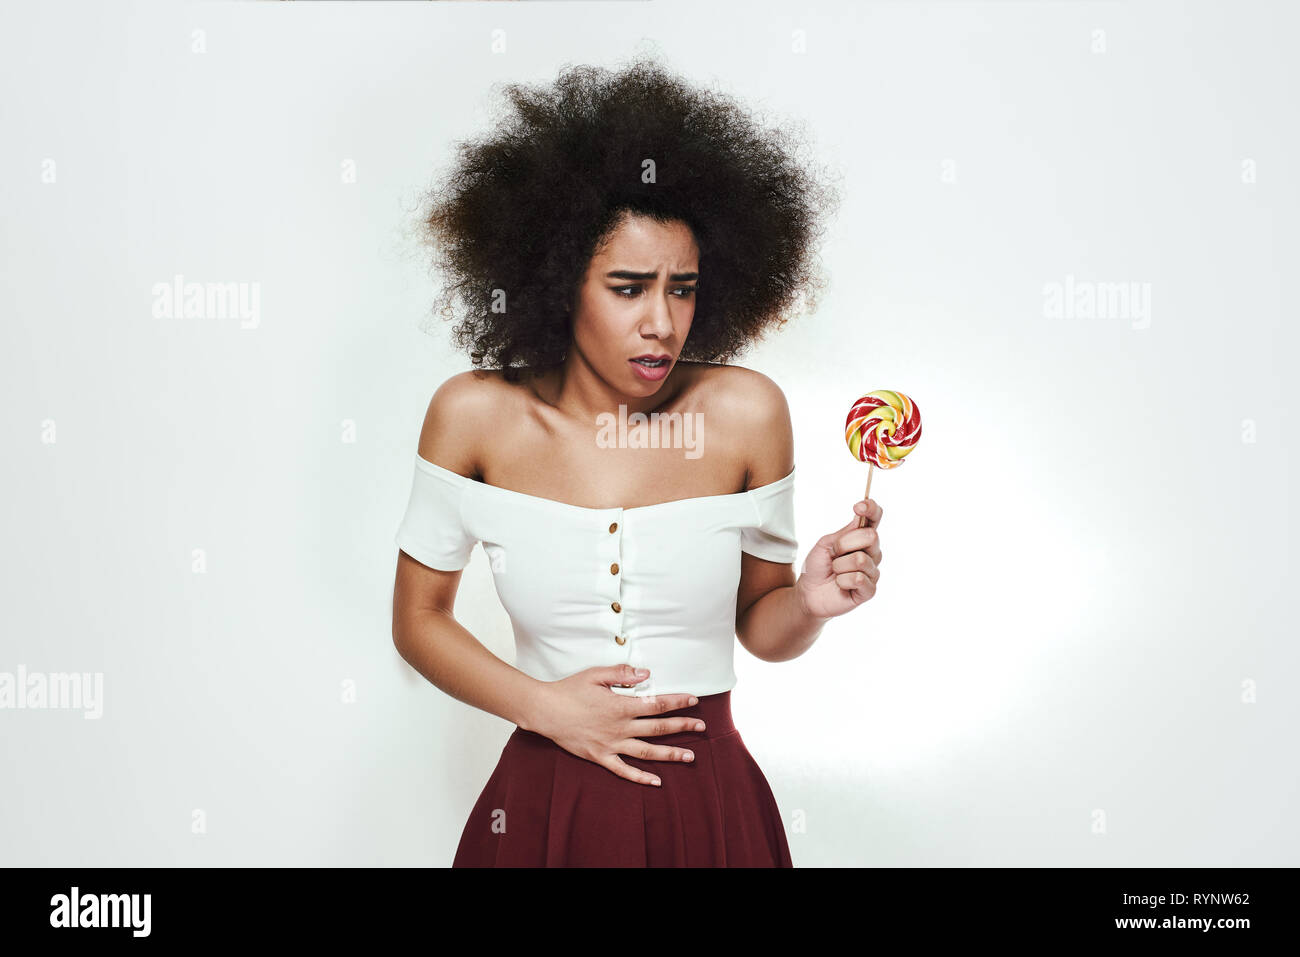 Nicht zu viel Süßigkeiten essen! Junge afro-amerikanische Frau mit bunten Lutscher in der Hand Bauchschmerzen, weil sie zu viel Süßigkeiten gegessen. Ungesunde Lebensmittel. Krankheit Konzept Stockfoto